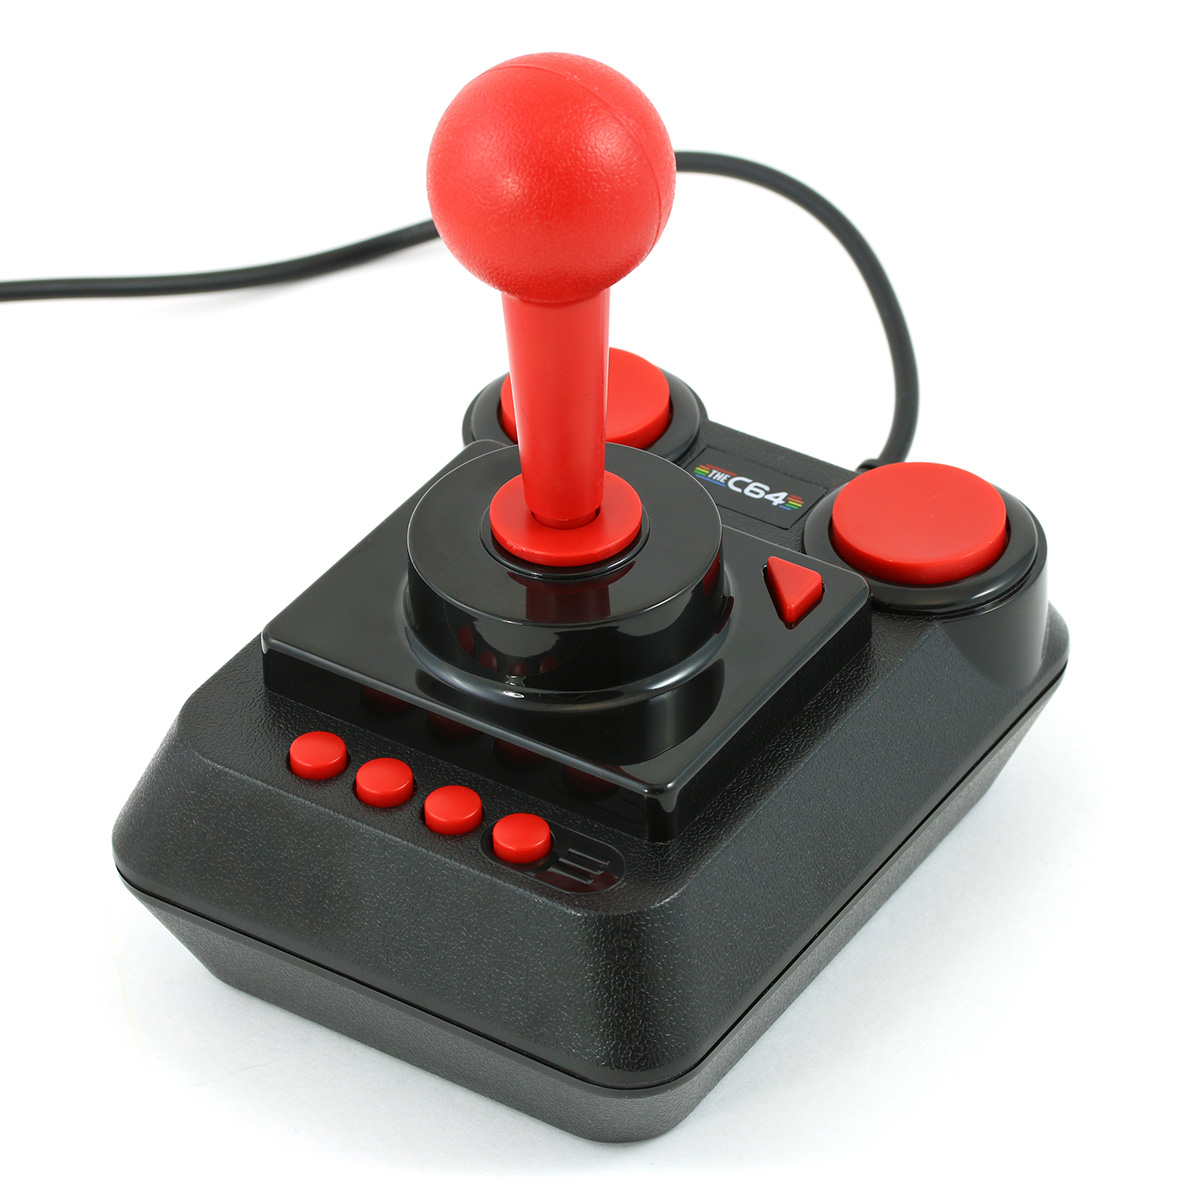 Retro Games Ltd - C64 Mini Image 6